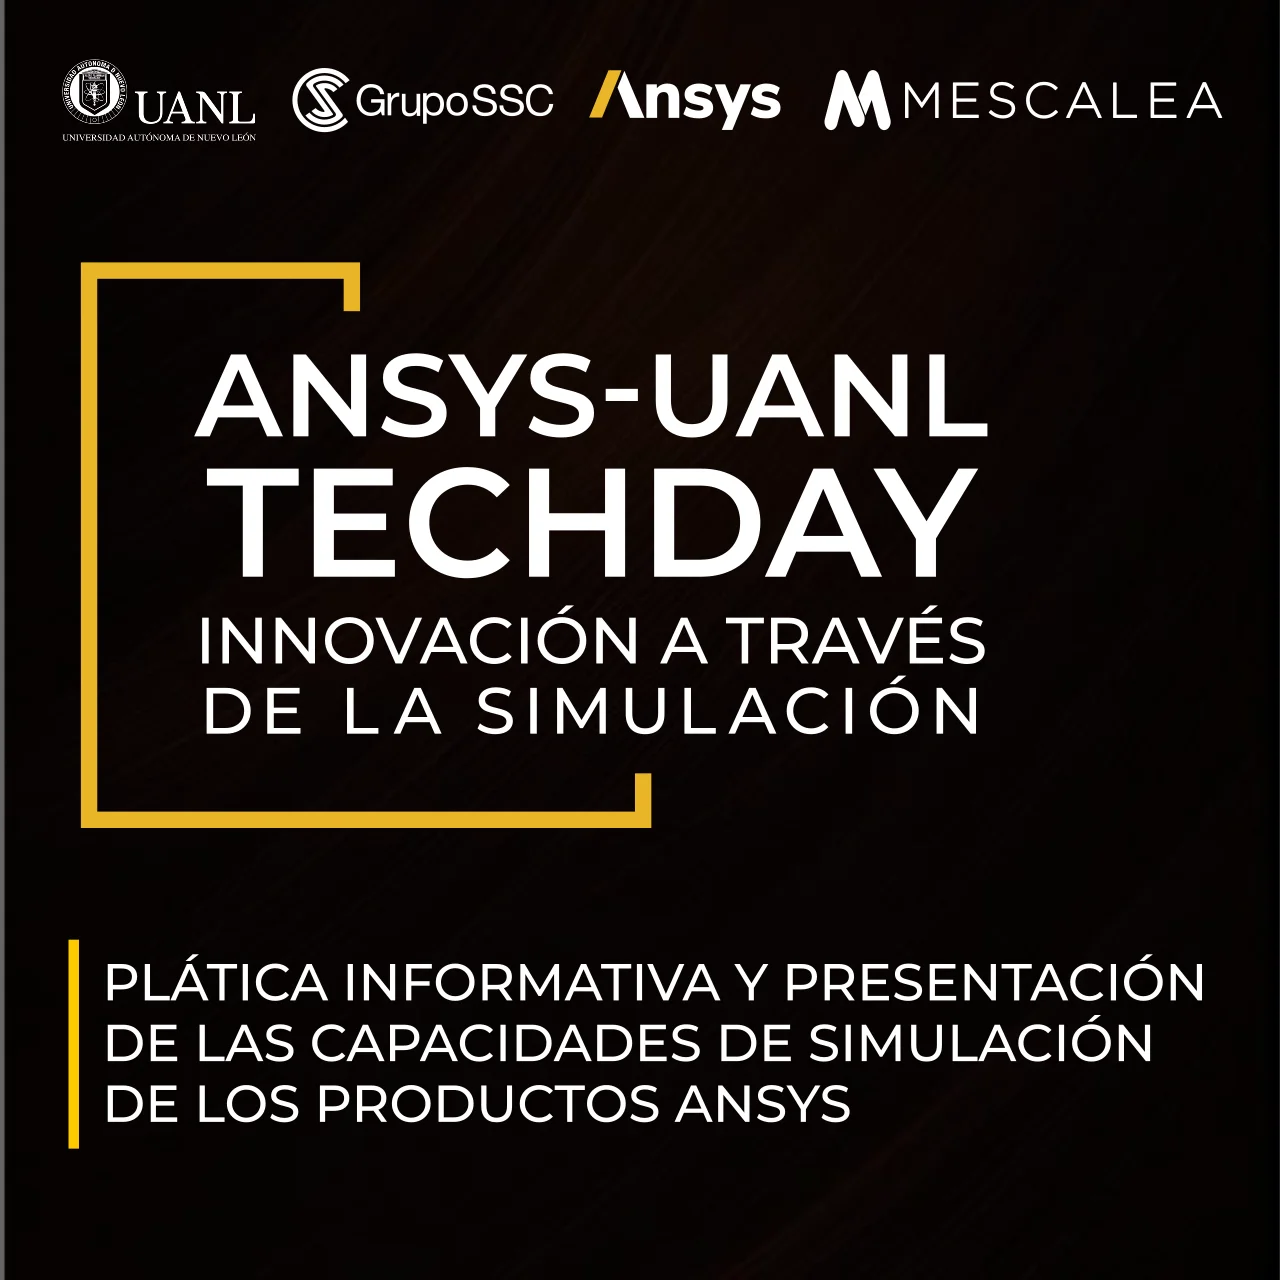 ANSYS-UANL TechDay: Innovación a través de la simulación | Platica